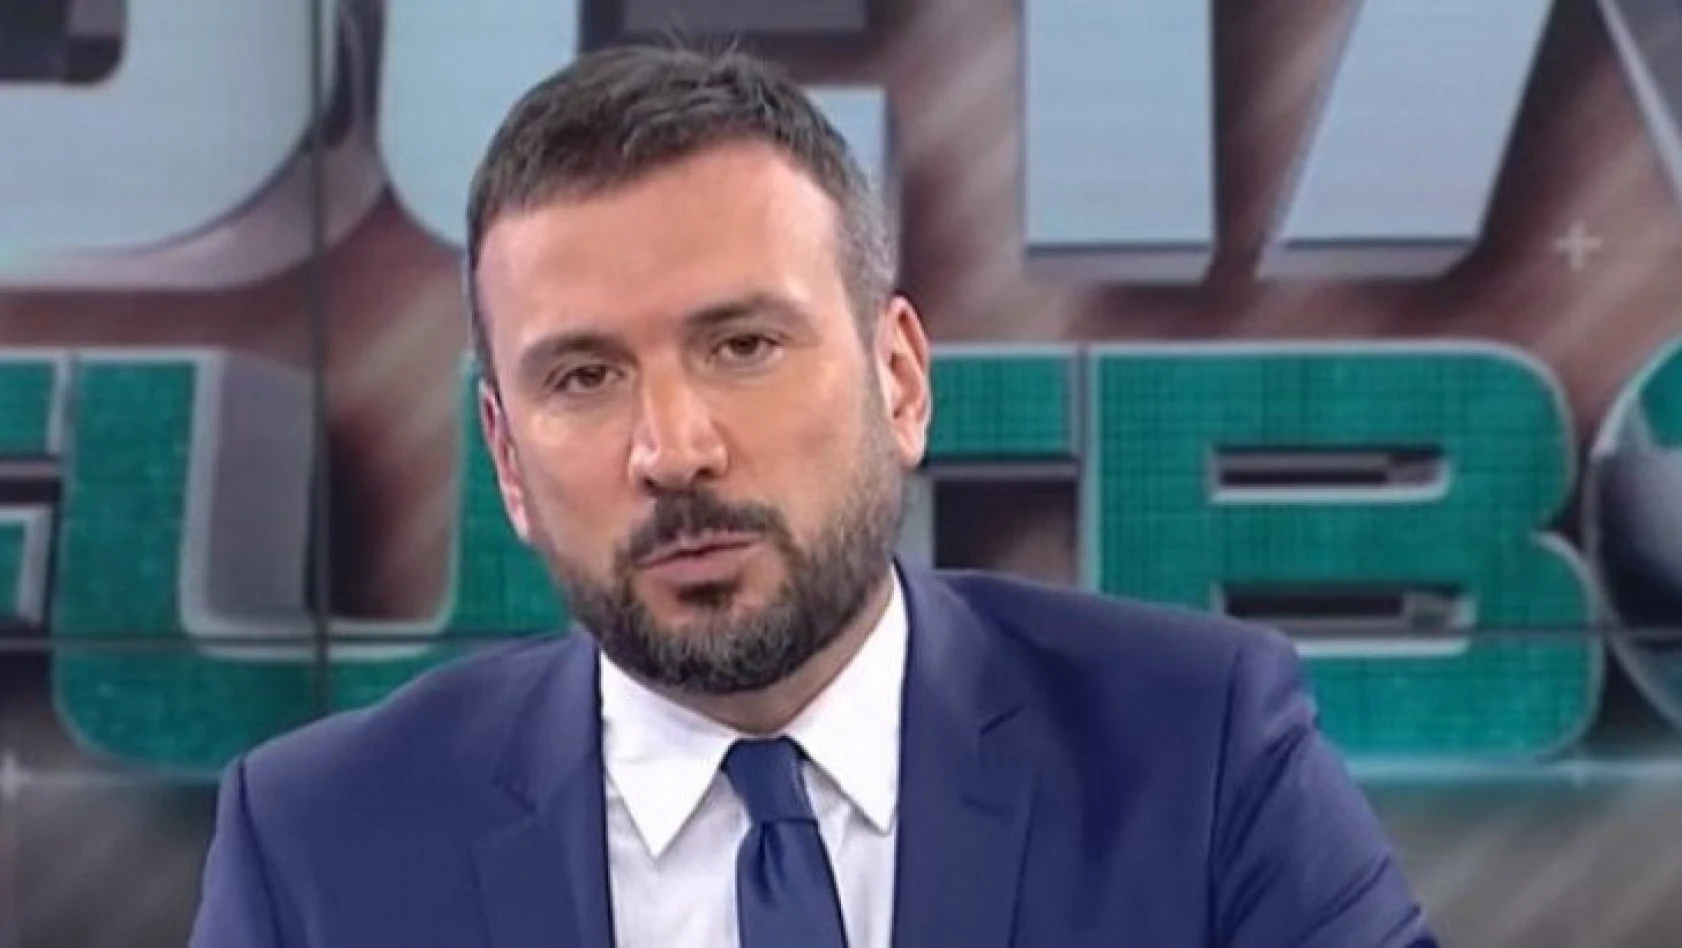 Spor spikeri Ertem Şener'in yeni adresi belli oldu